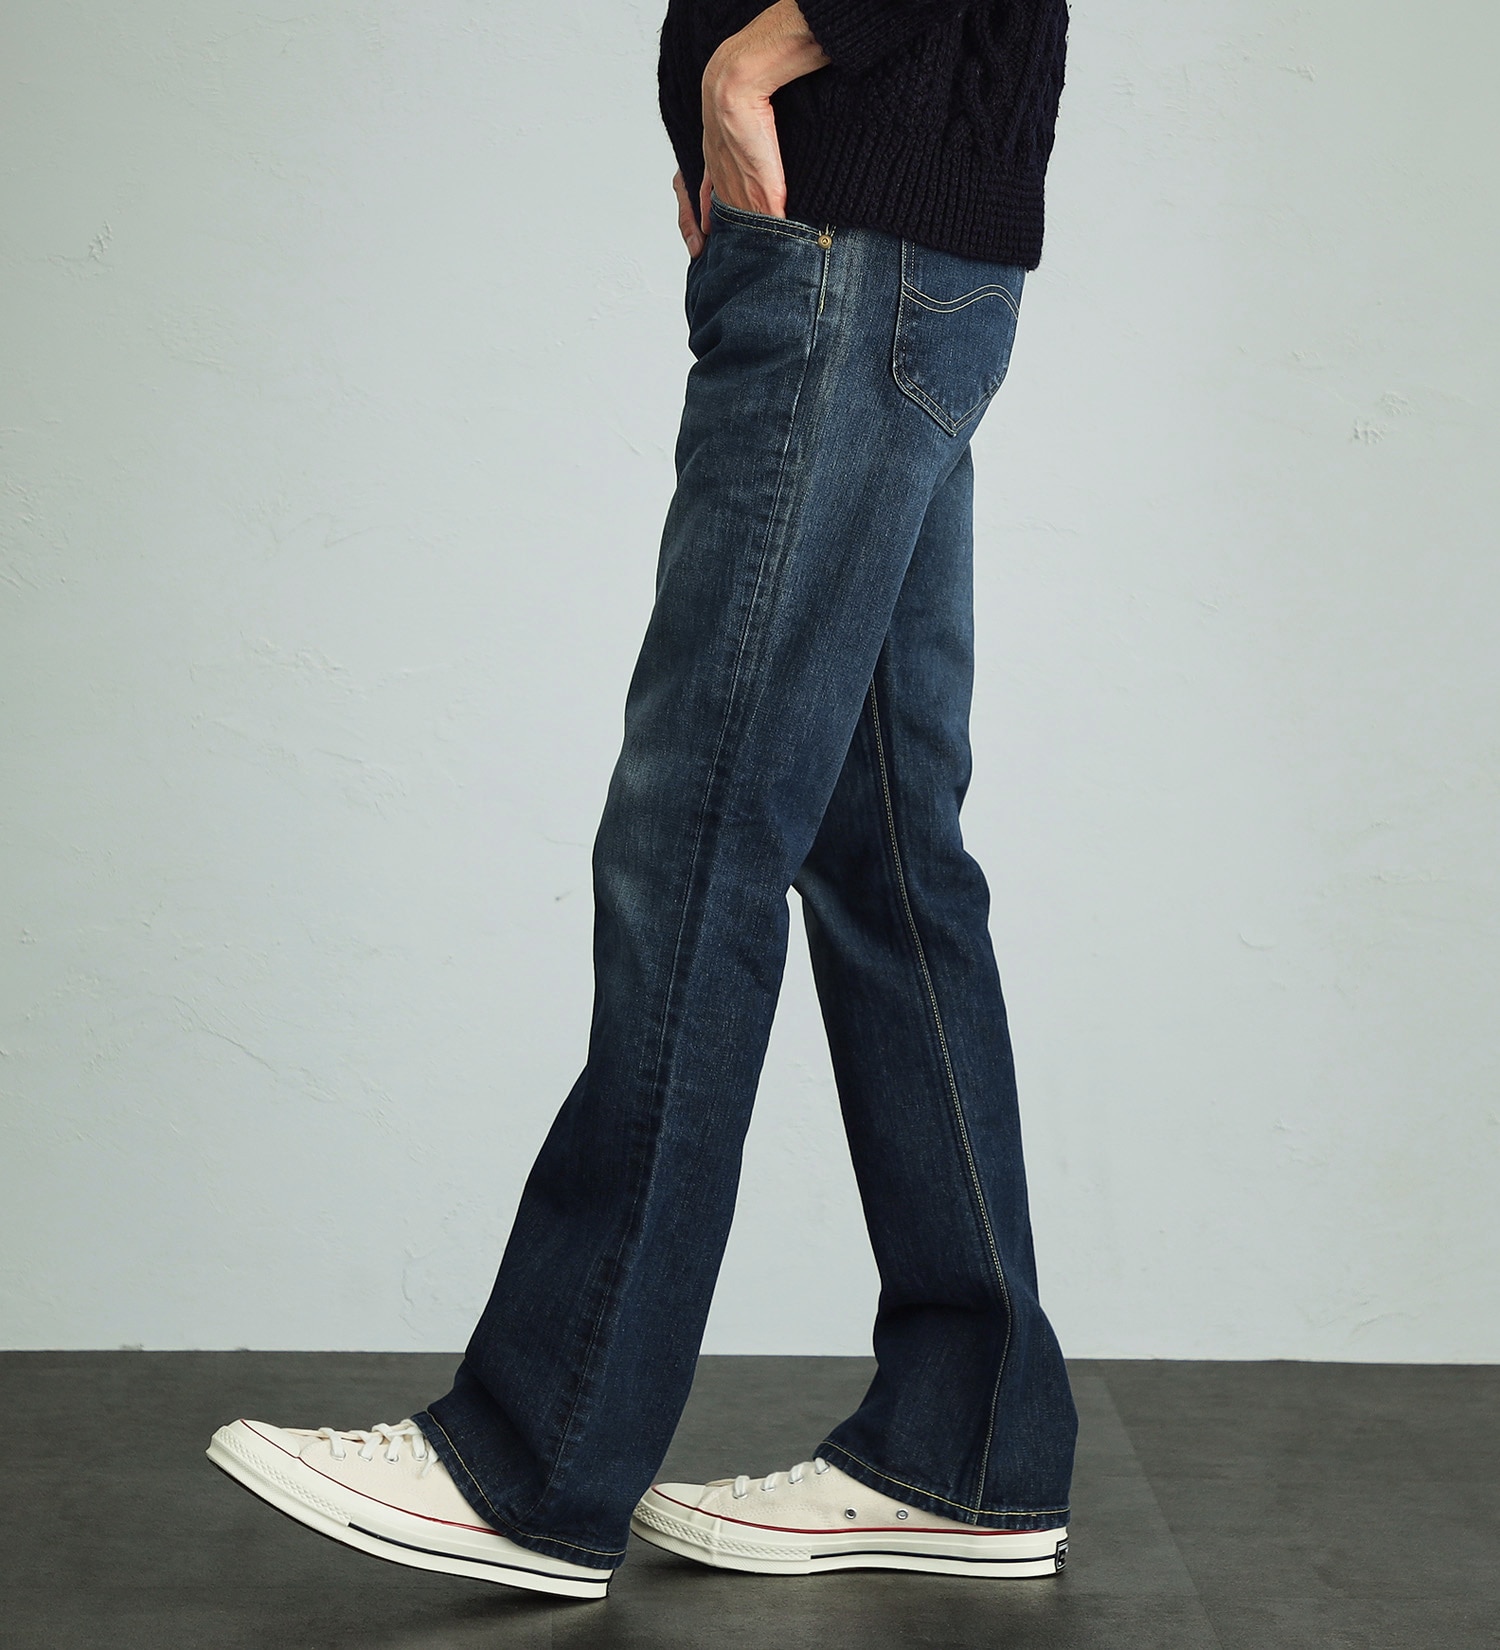 Lee(リー)の【股下長め(86cm)】AMERICAN RIDERS 102 ブーツカットジーンズ|パンツ/デニムパンツ/メンズ|濃色ブルー